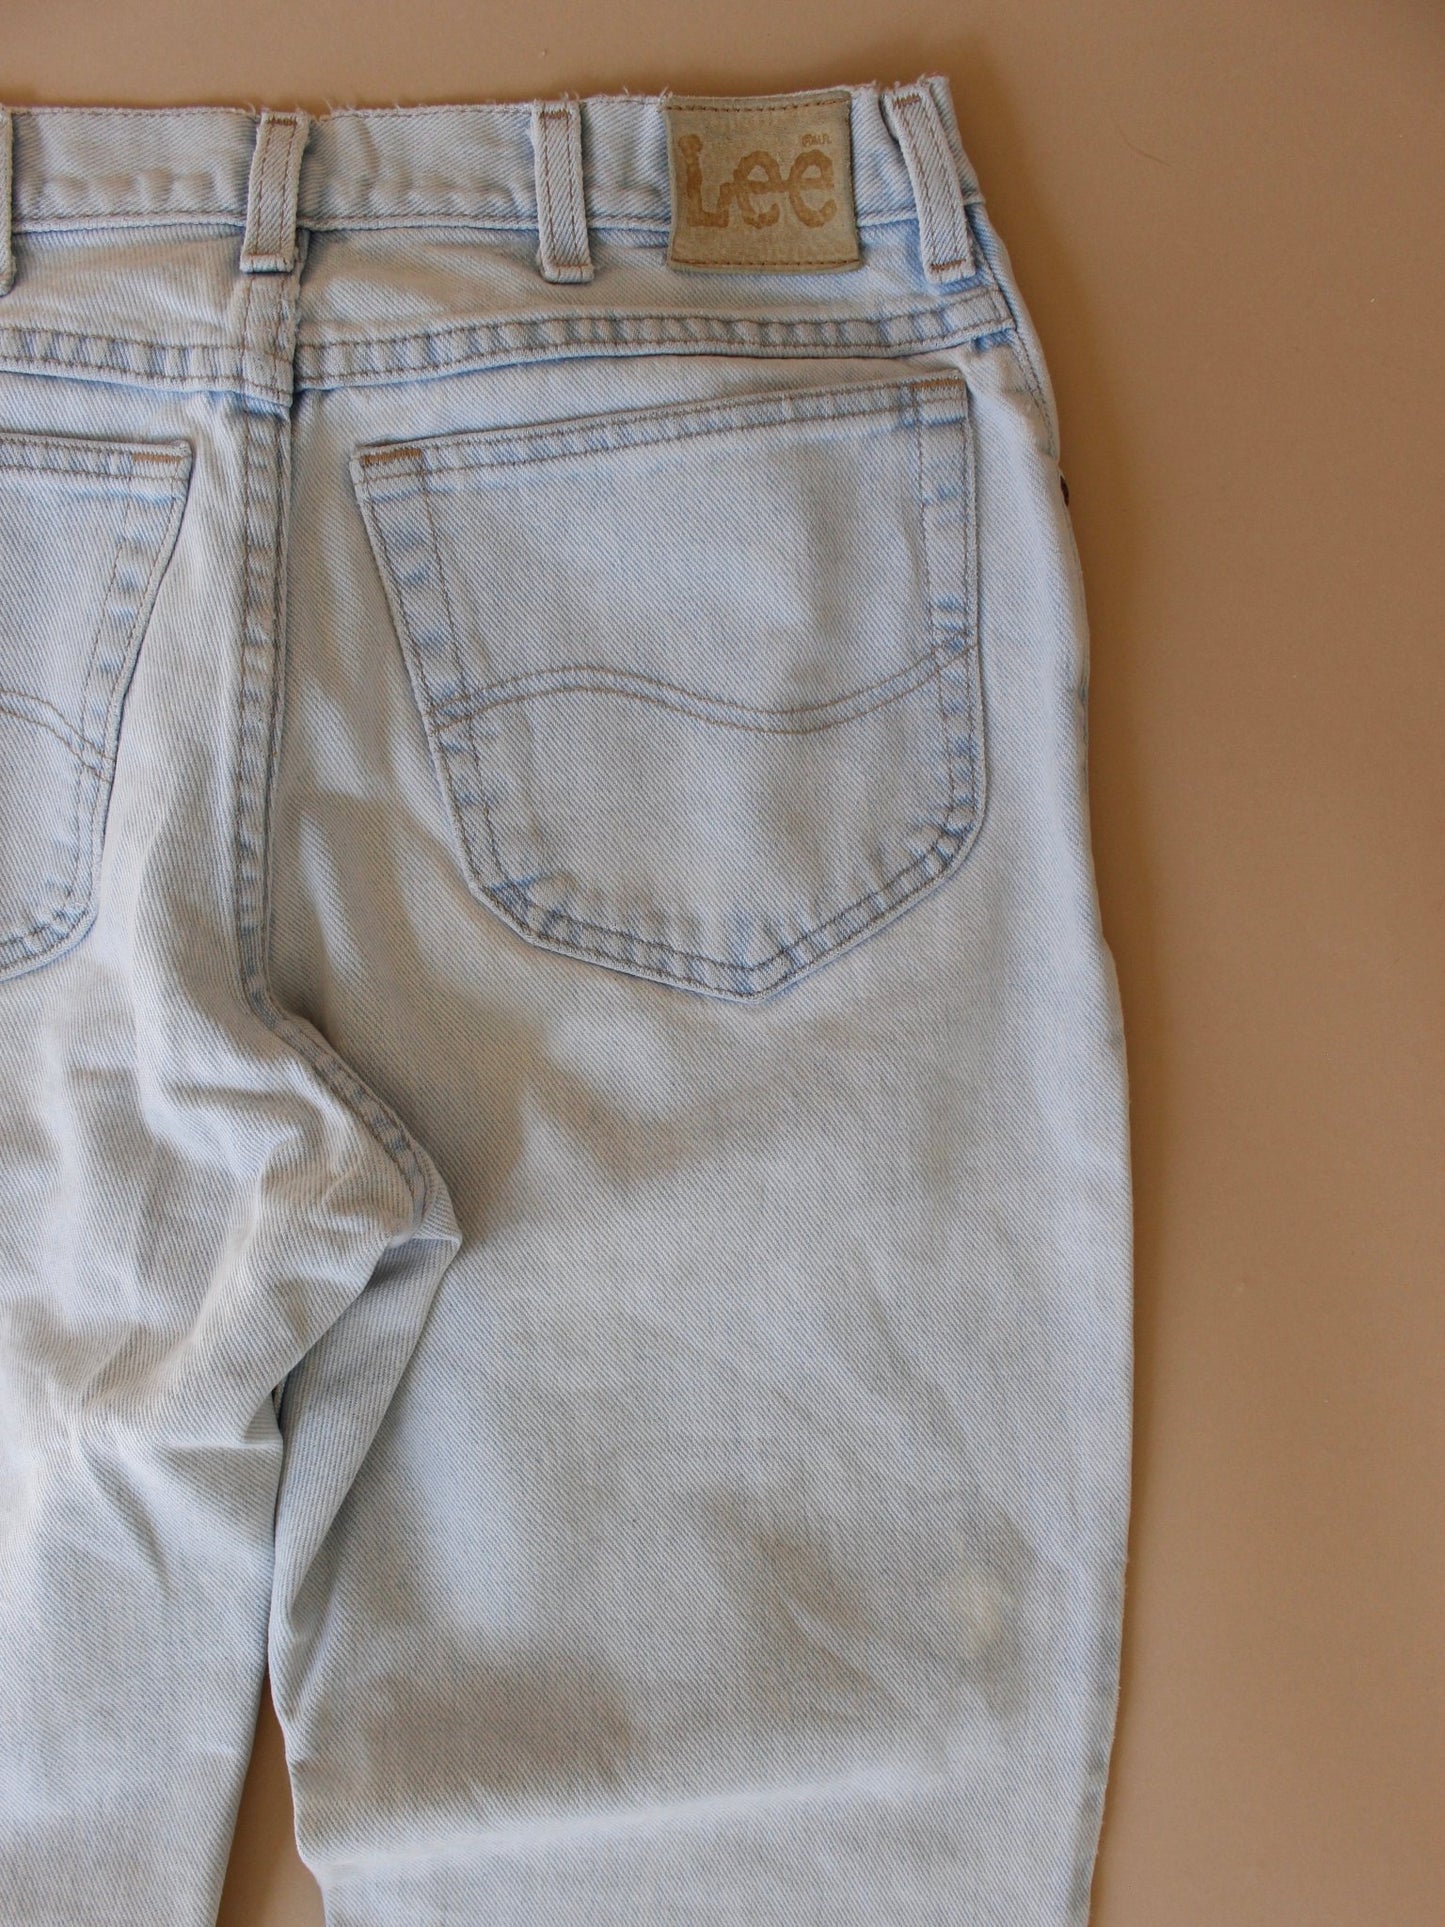 1990s Light Wash Lee Jeans